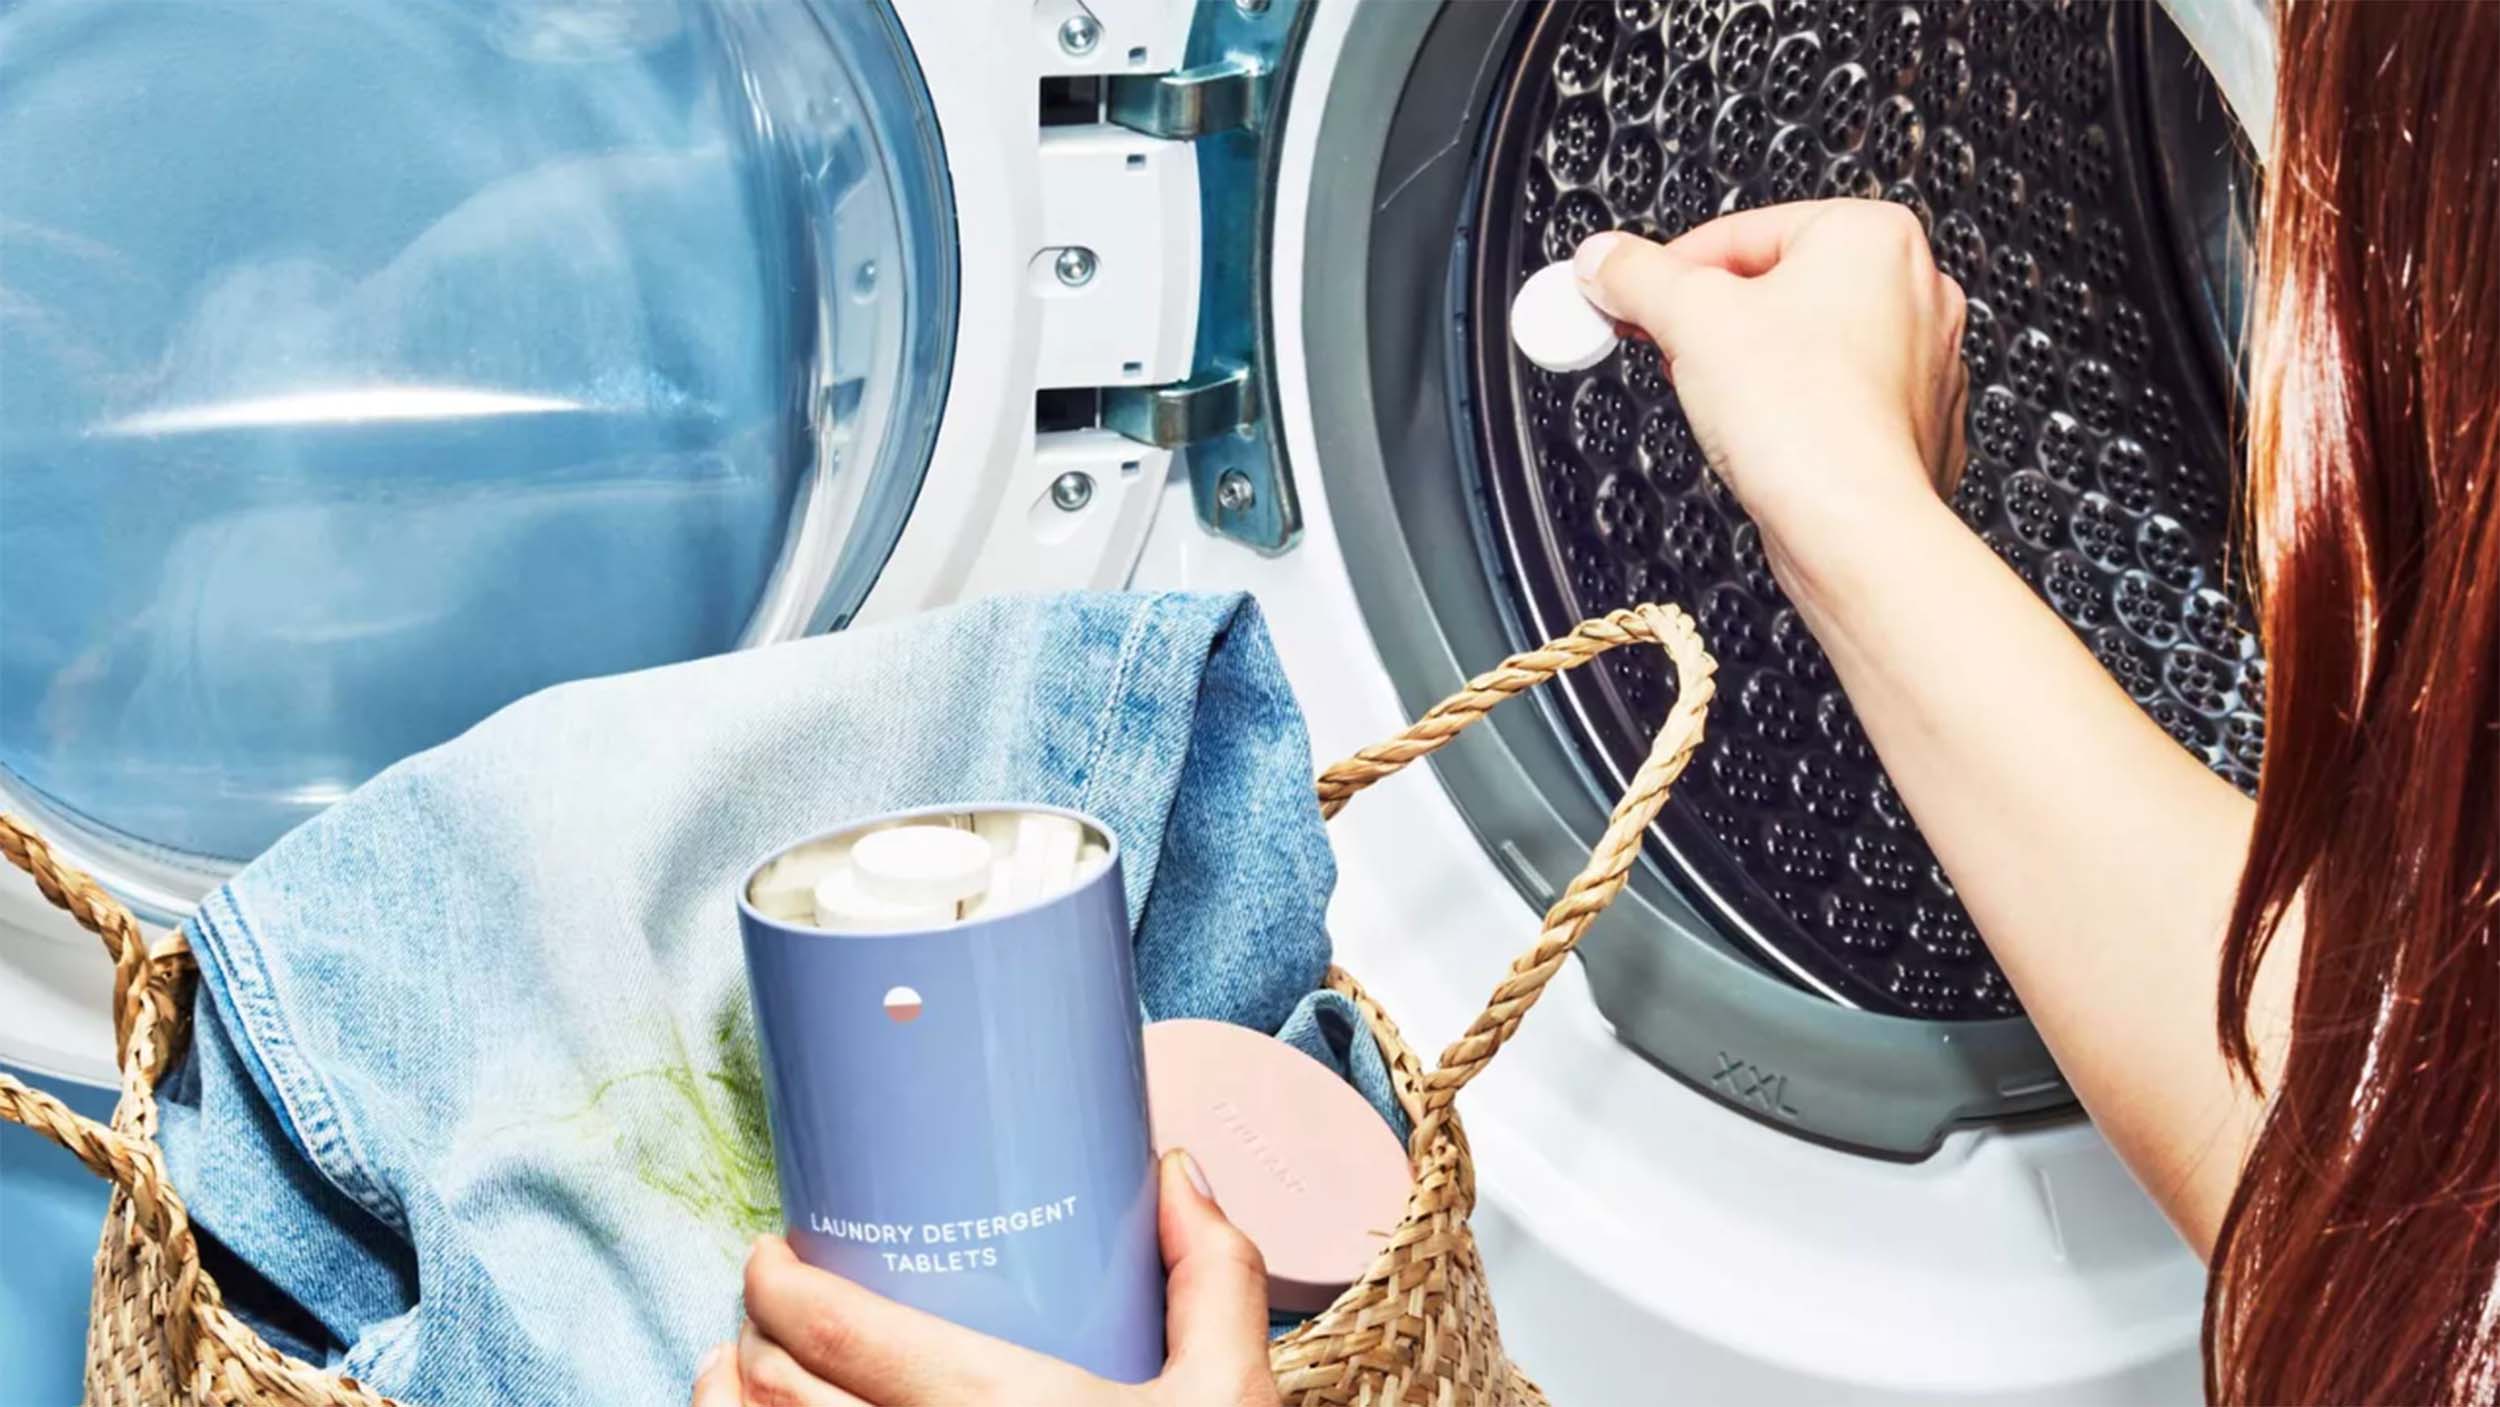 Does Powder Detergent Harm Your Washing Machine?